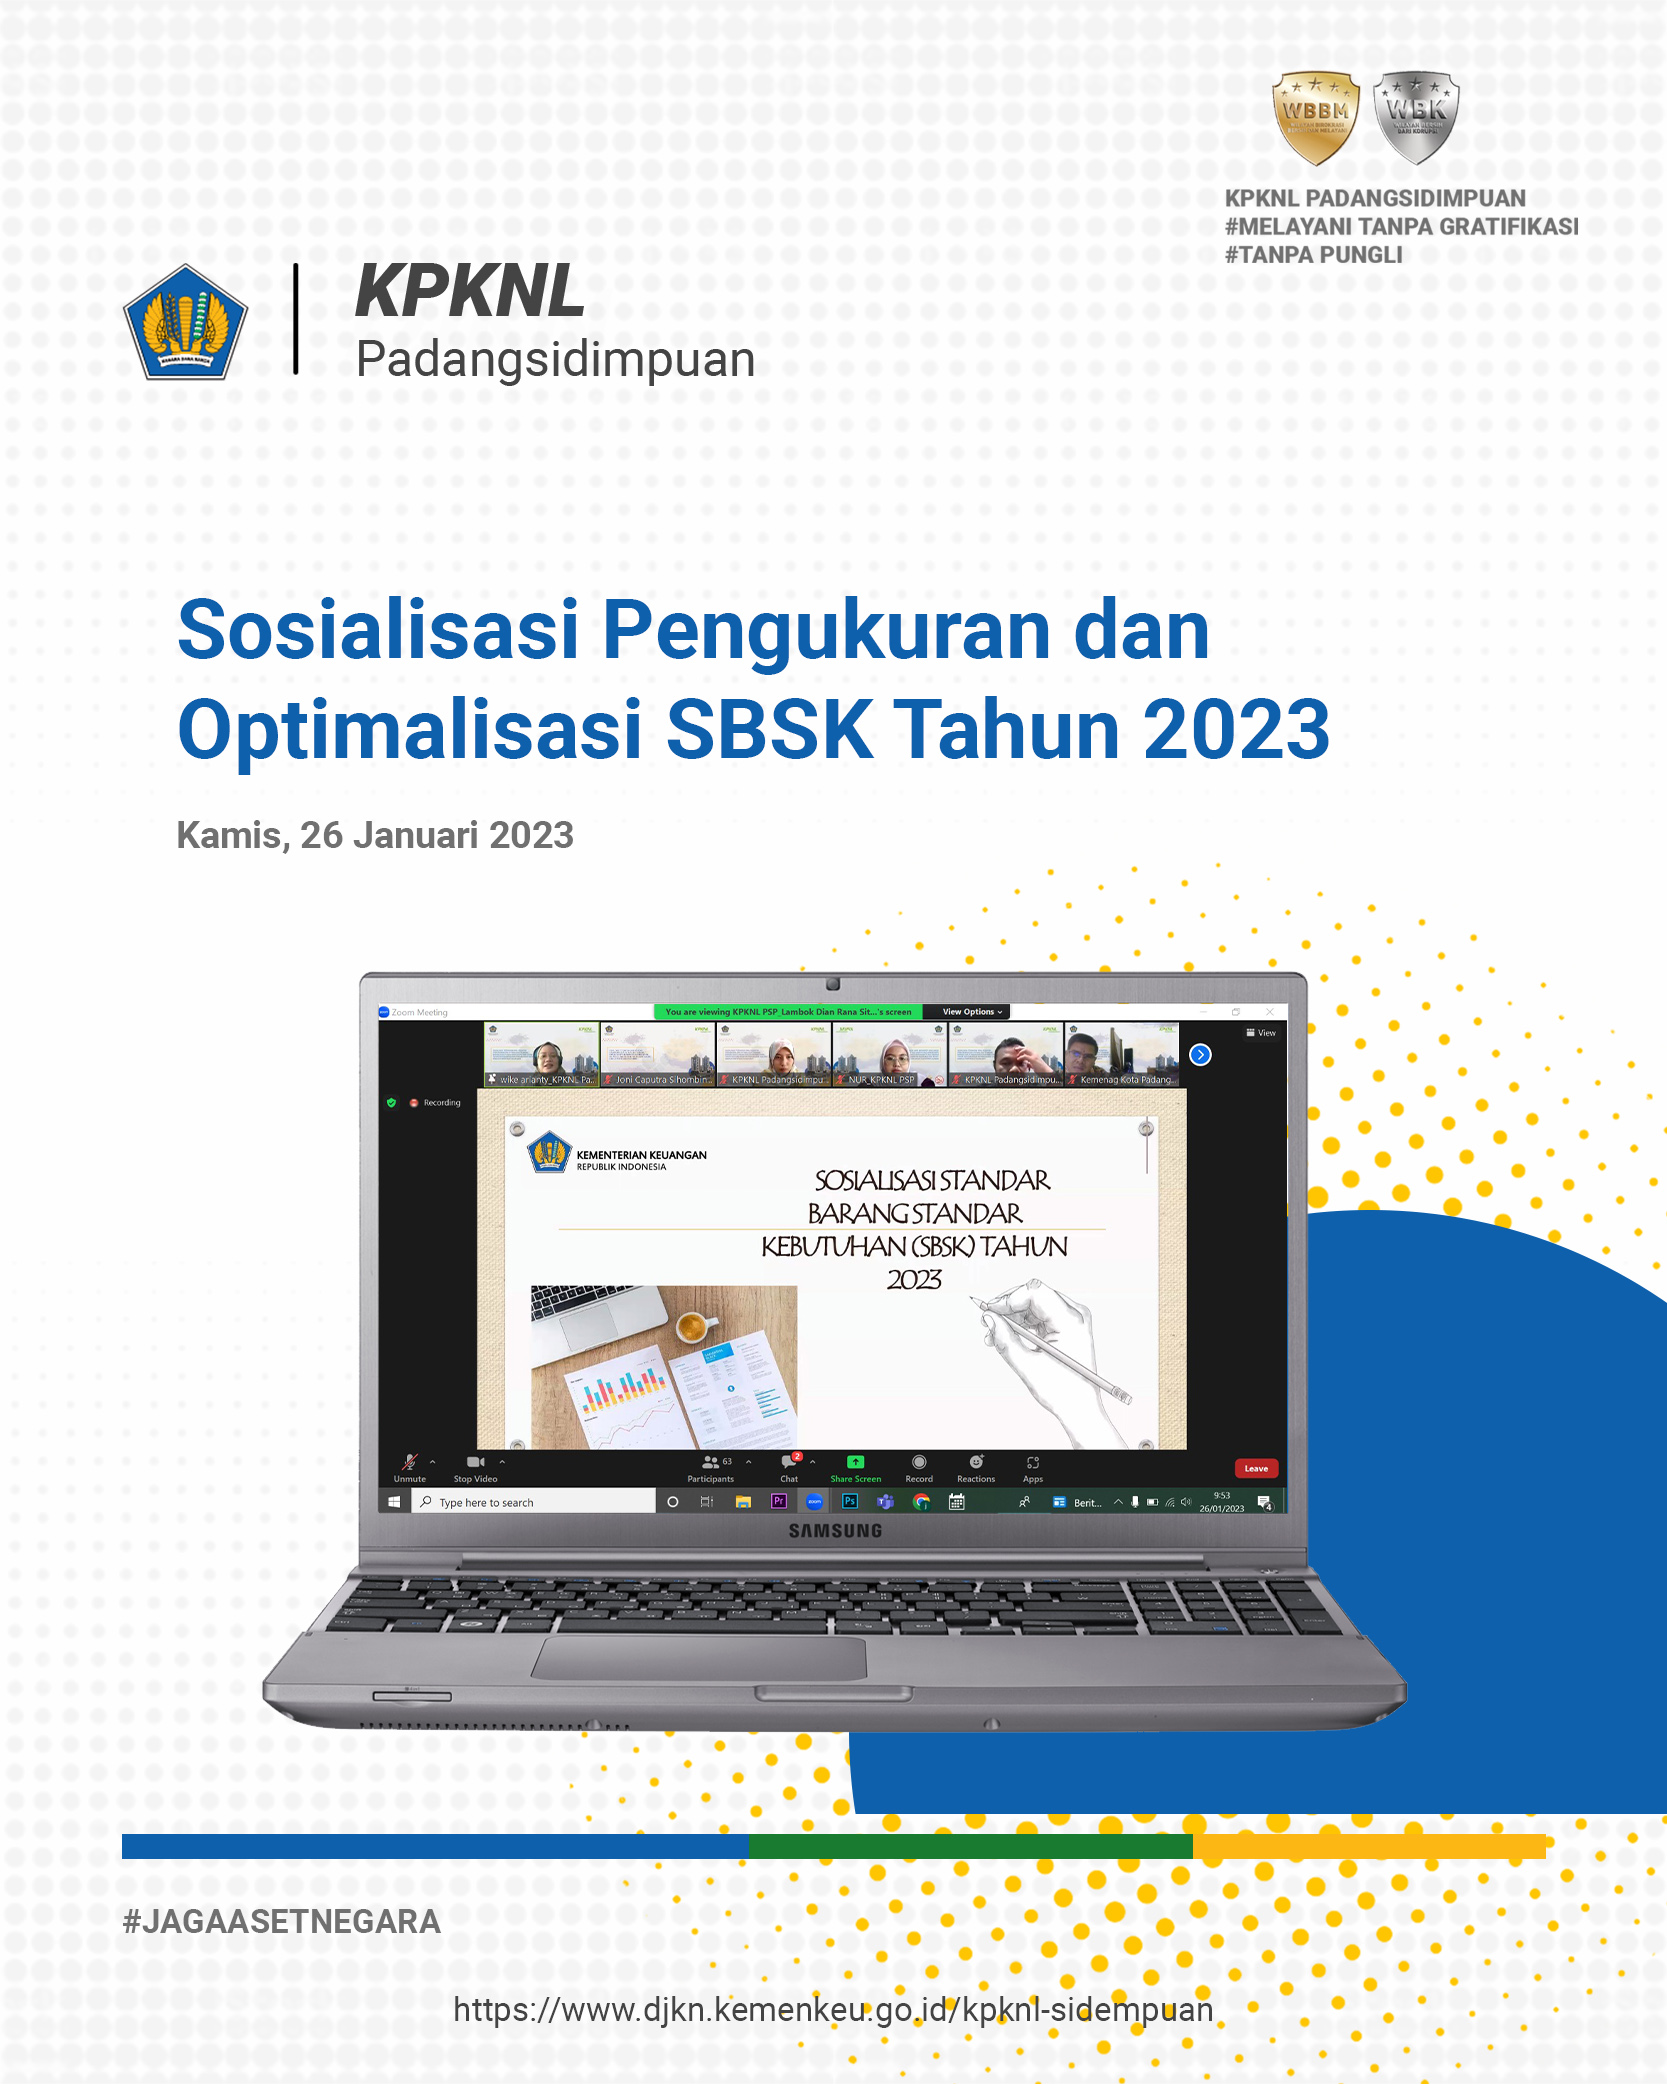 Sosialisasi Pengukuran dan Optimalisasi Standar Barang dan Standar Kebutuhan (SBSK) BMN Tahun 2023